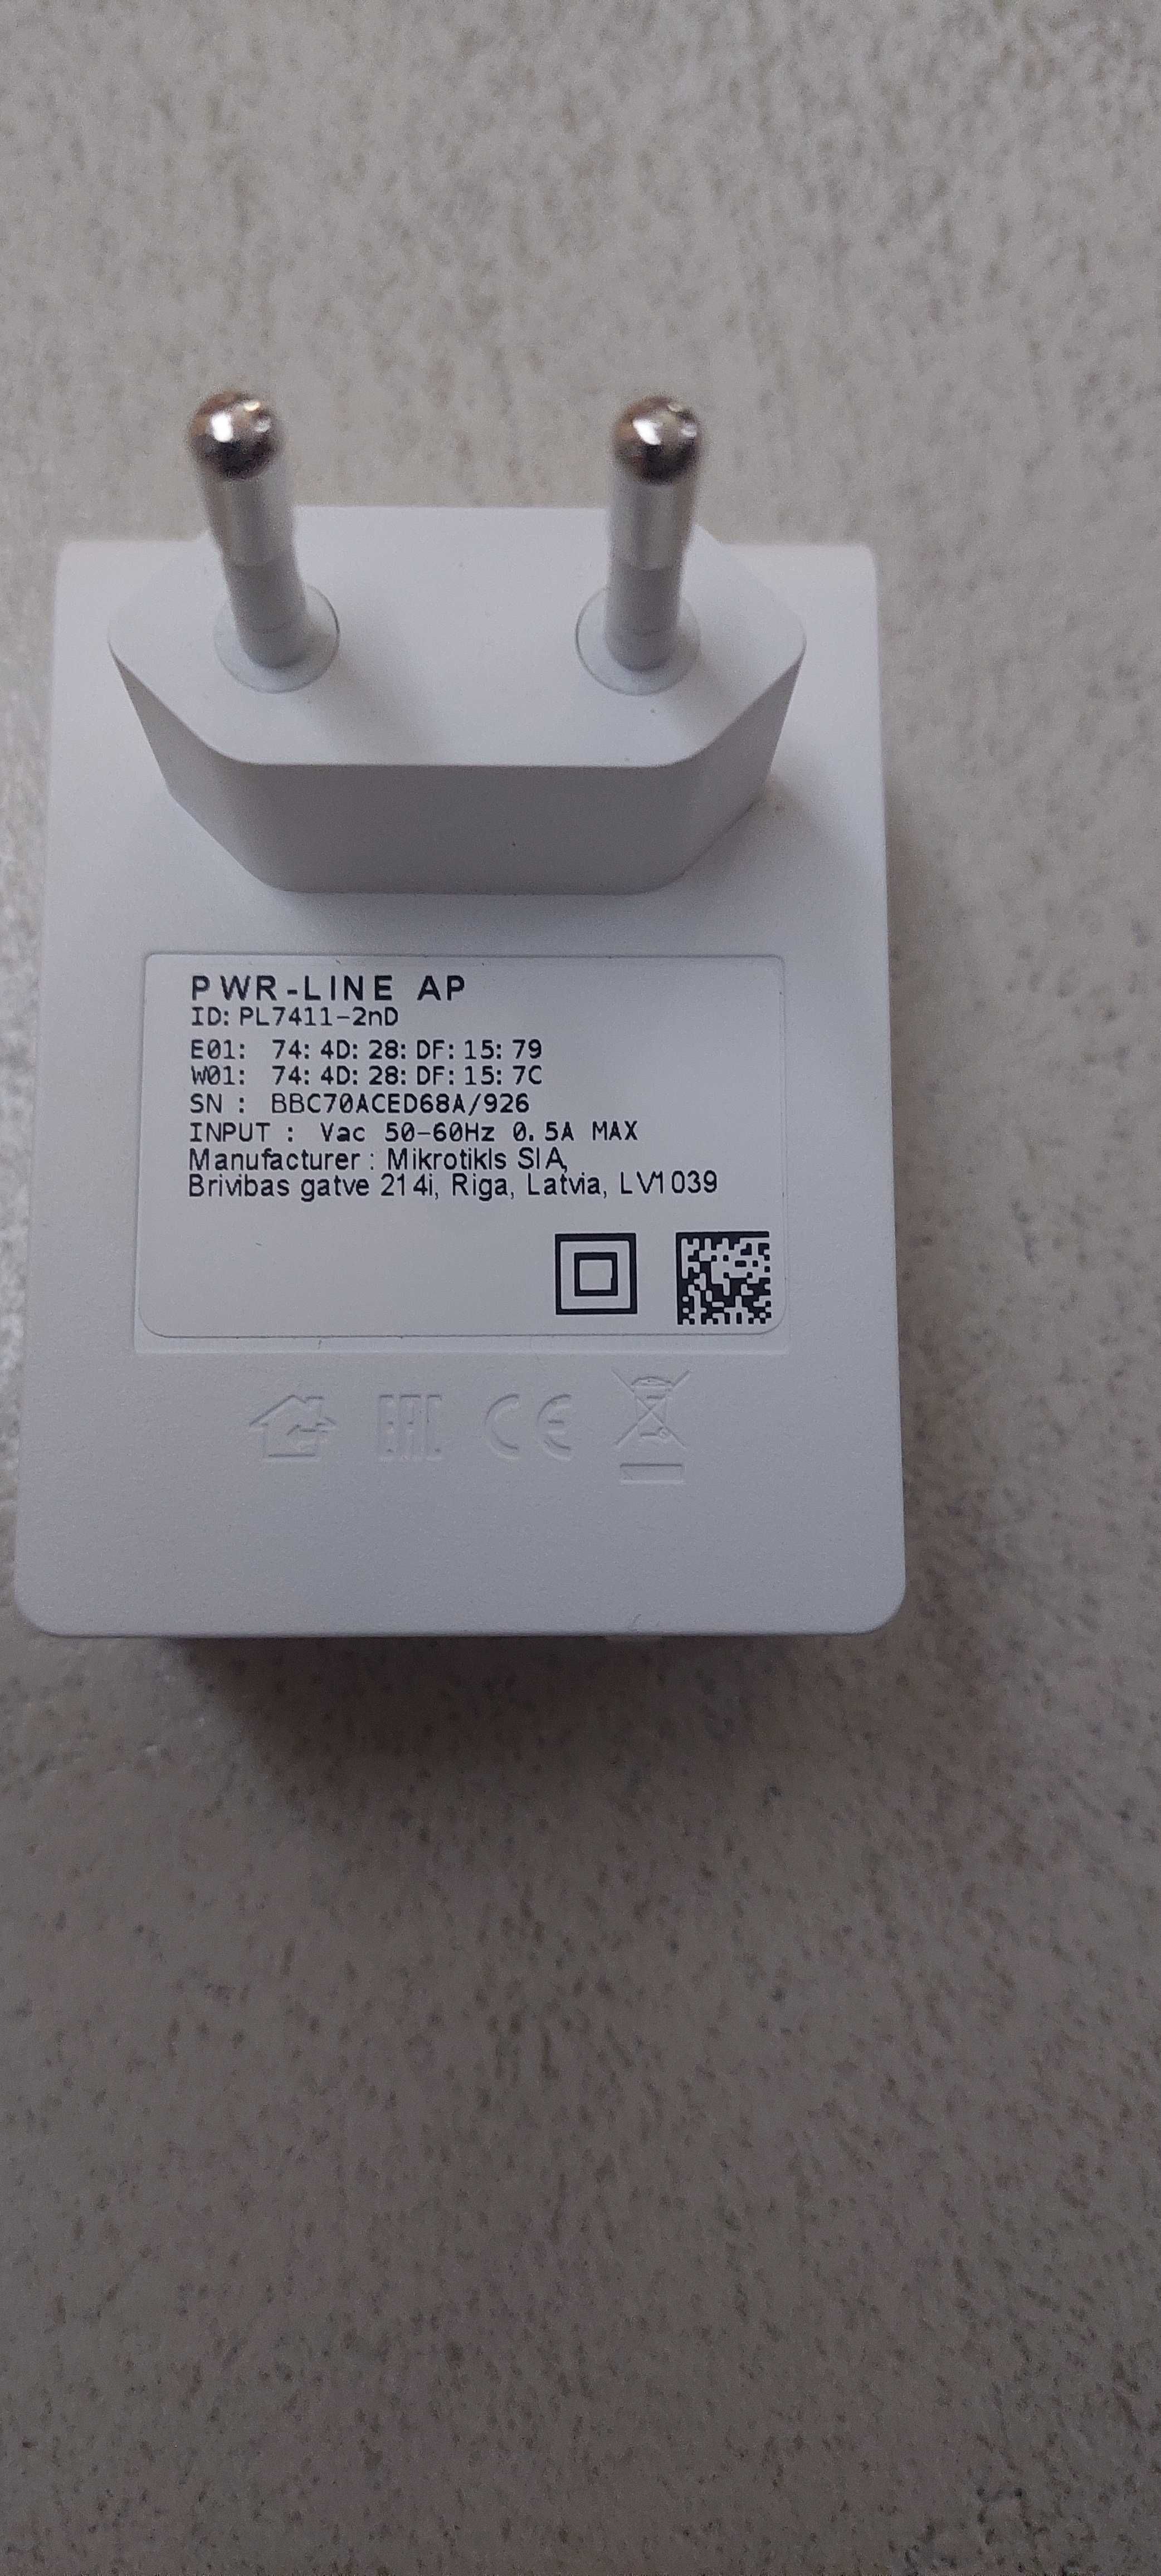 MikroTik routerbard PWR- LINE AP